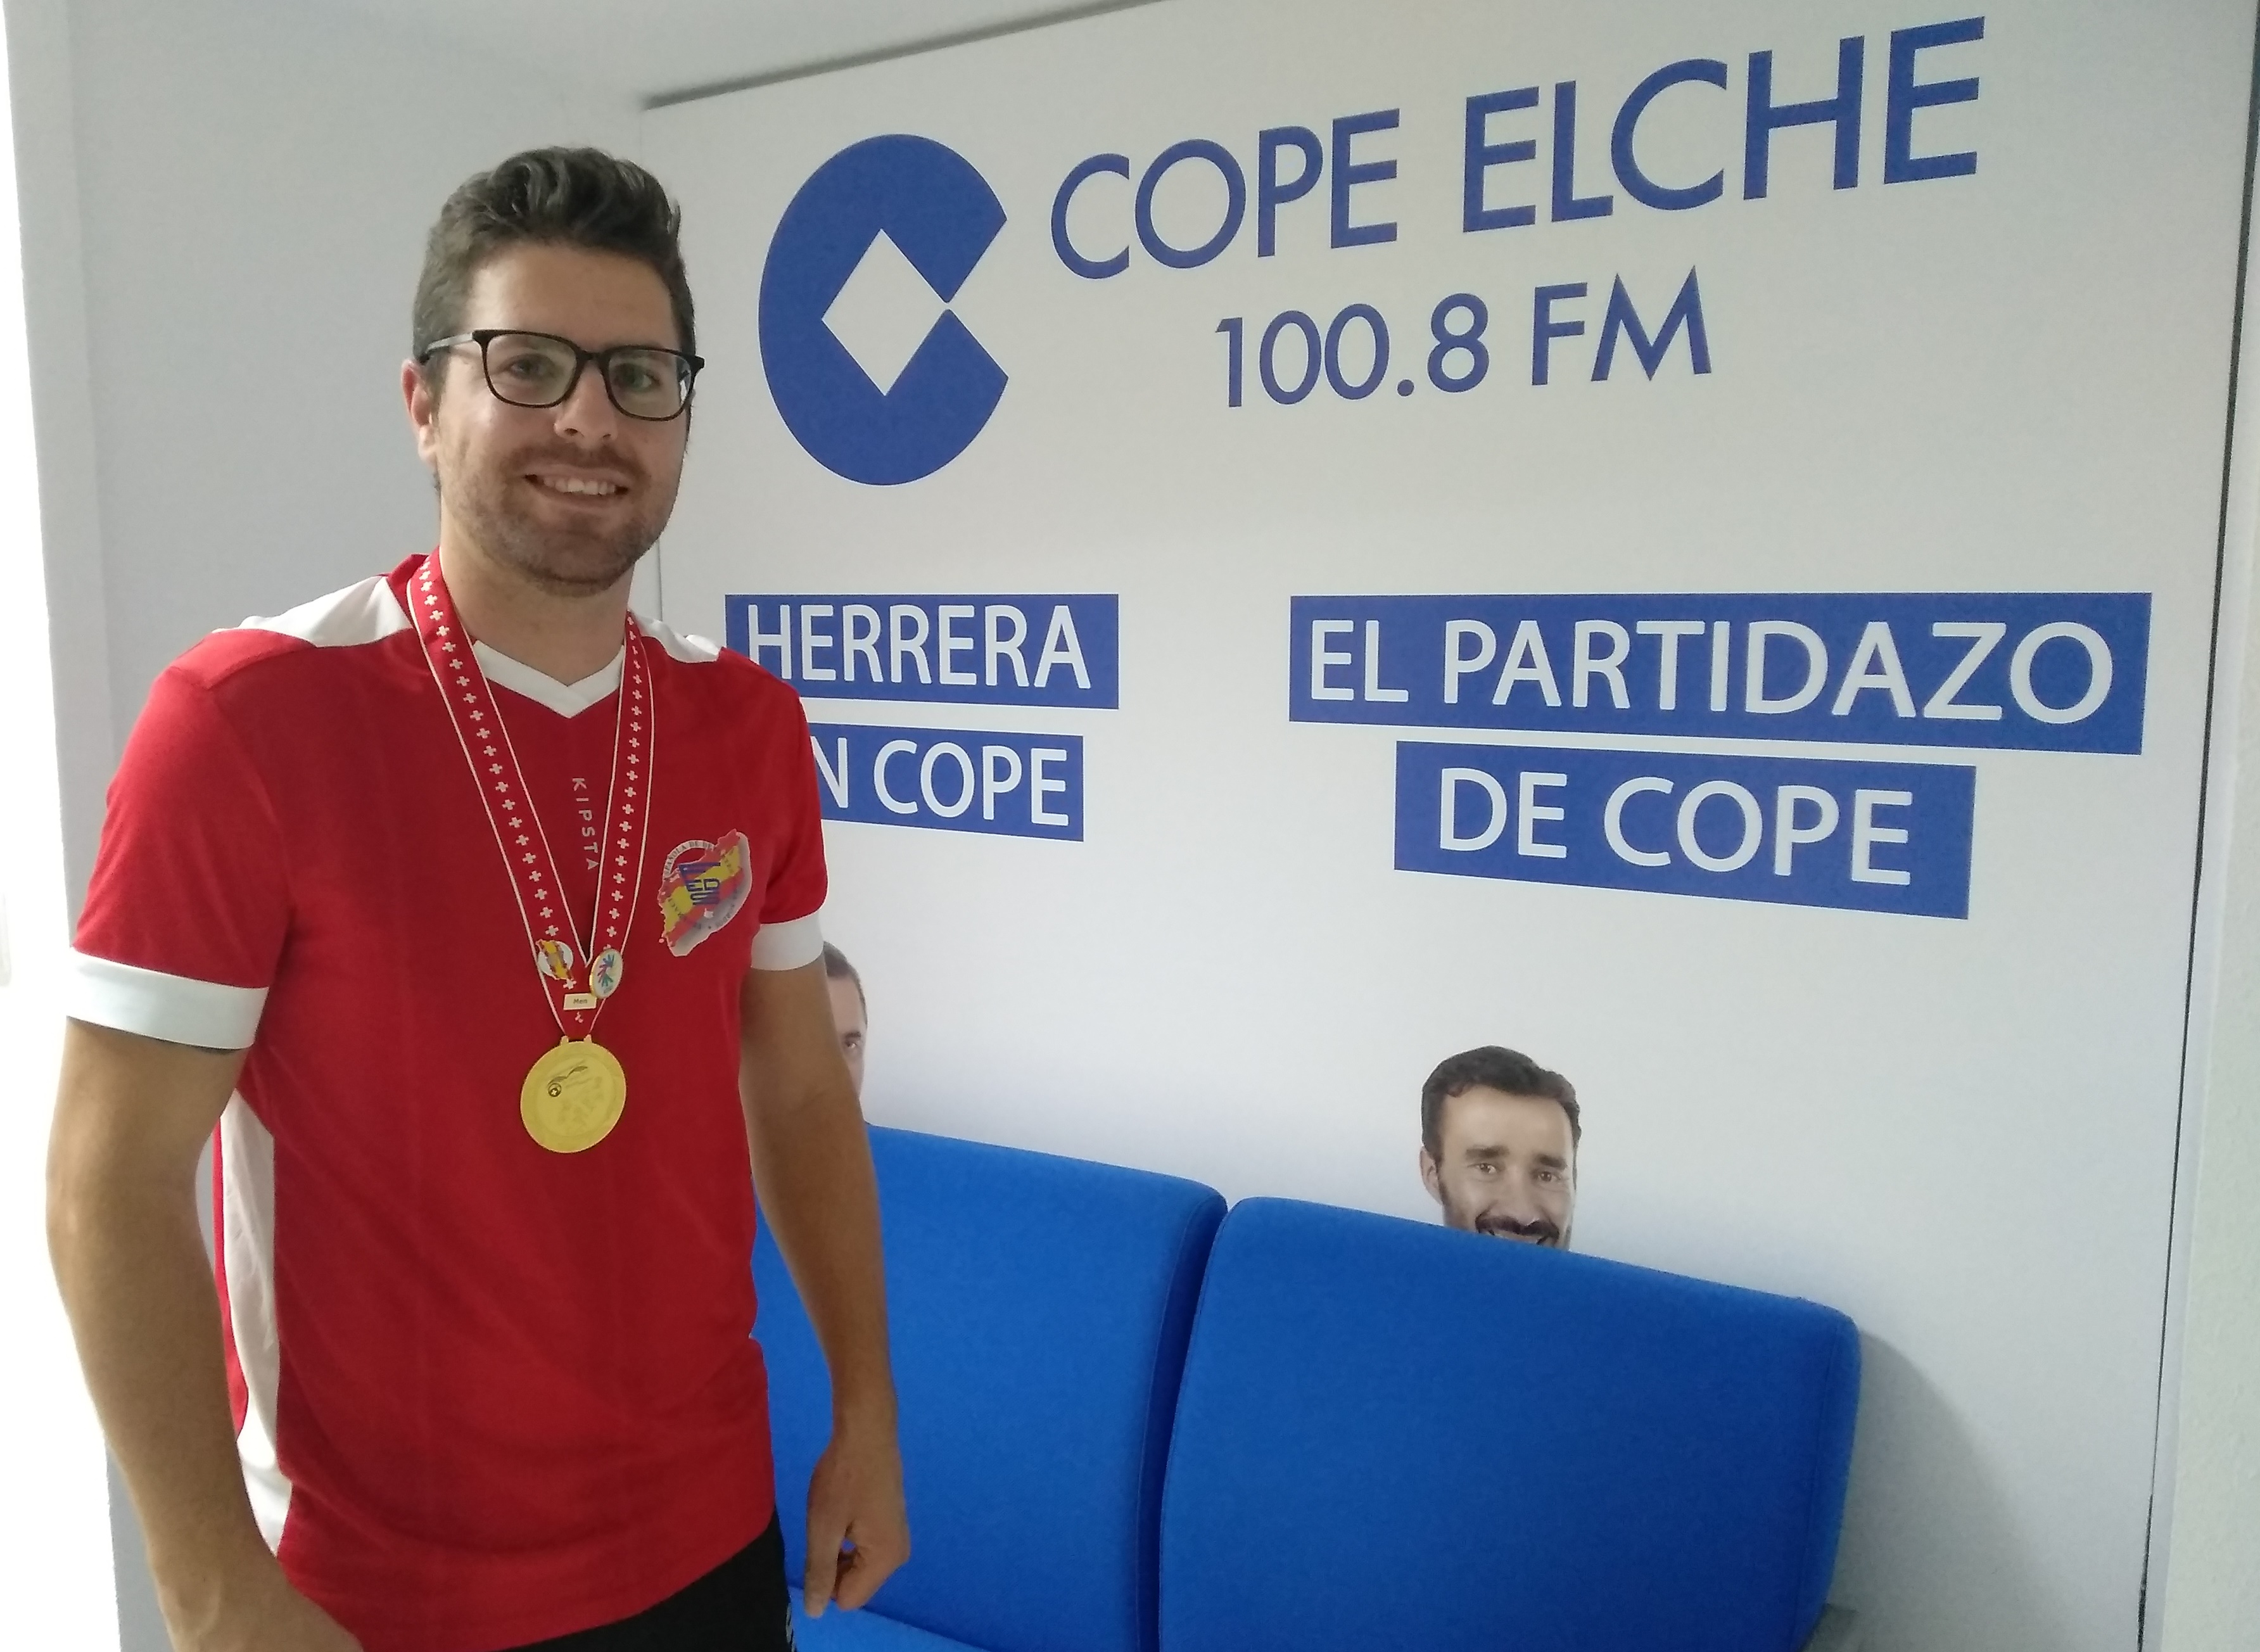 Antonio Lara posa con su medalla de campeón del Mundo y la camiseta de España / COPE Elche 100.8 FM